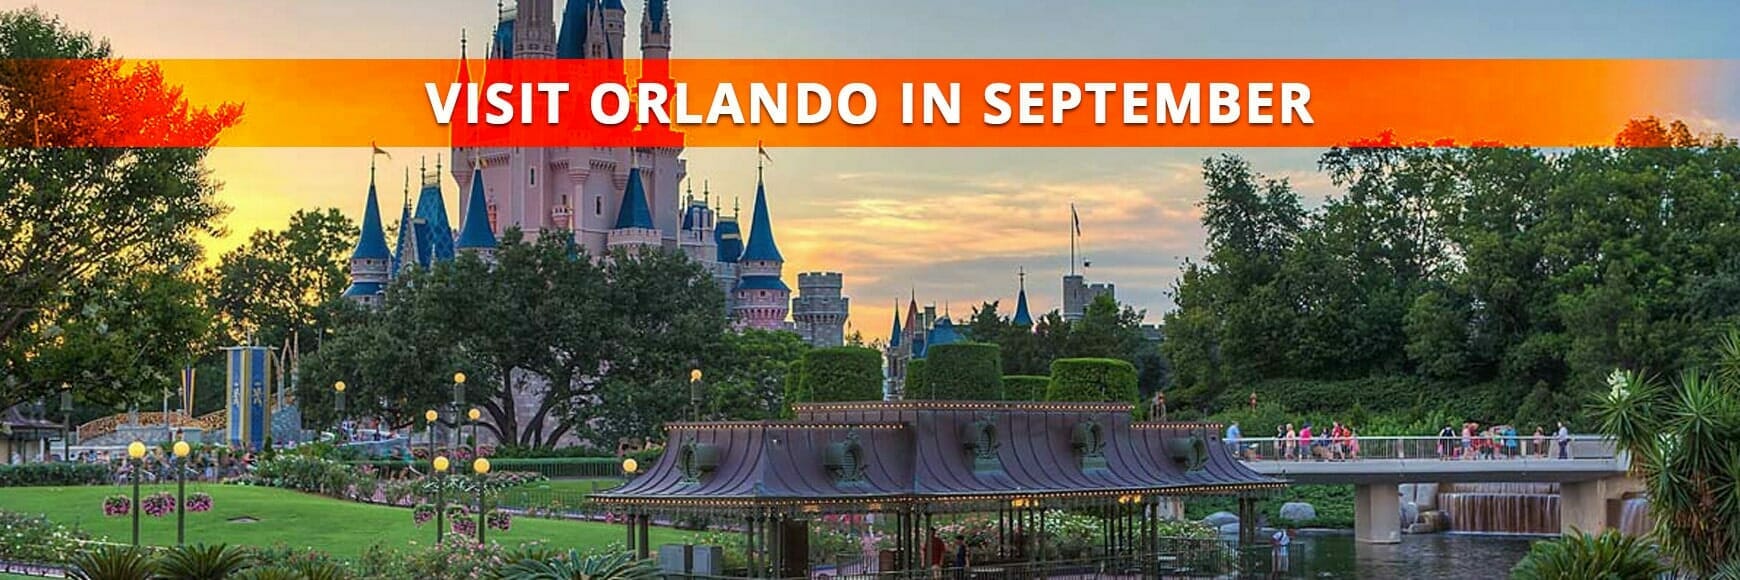 Visit Orlando in September - Orlando vacation